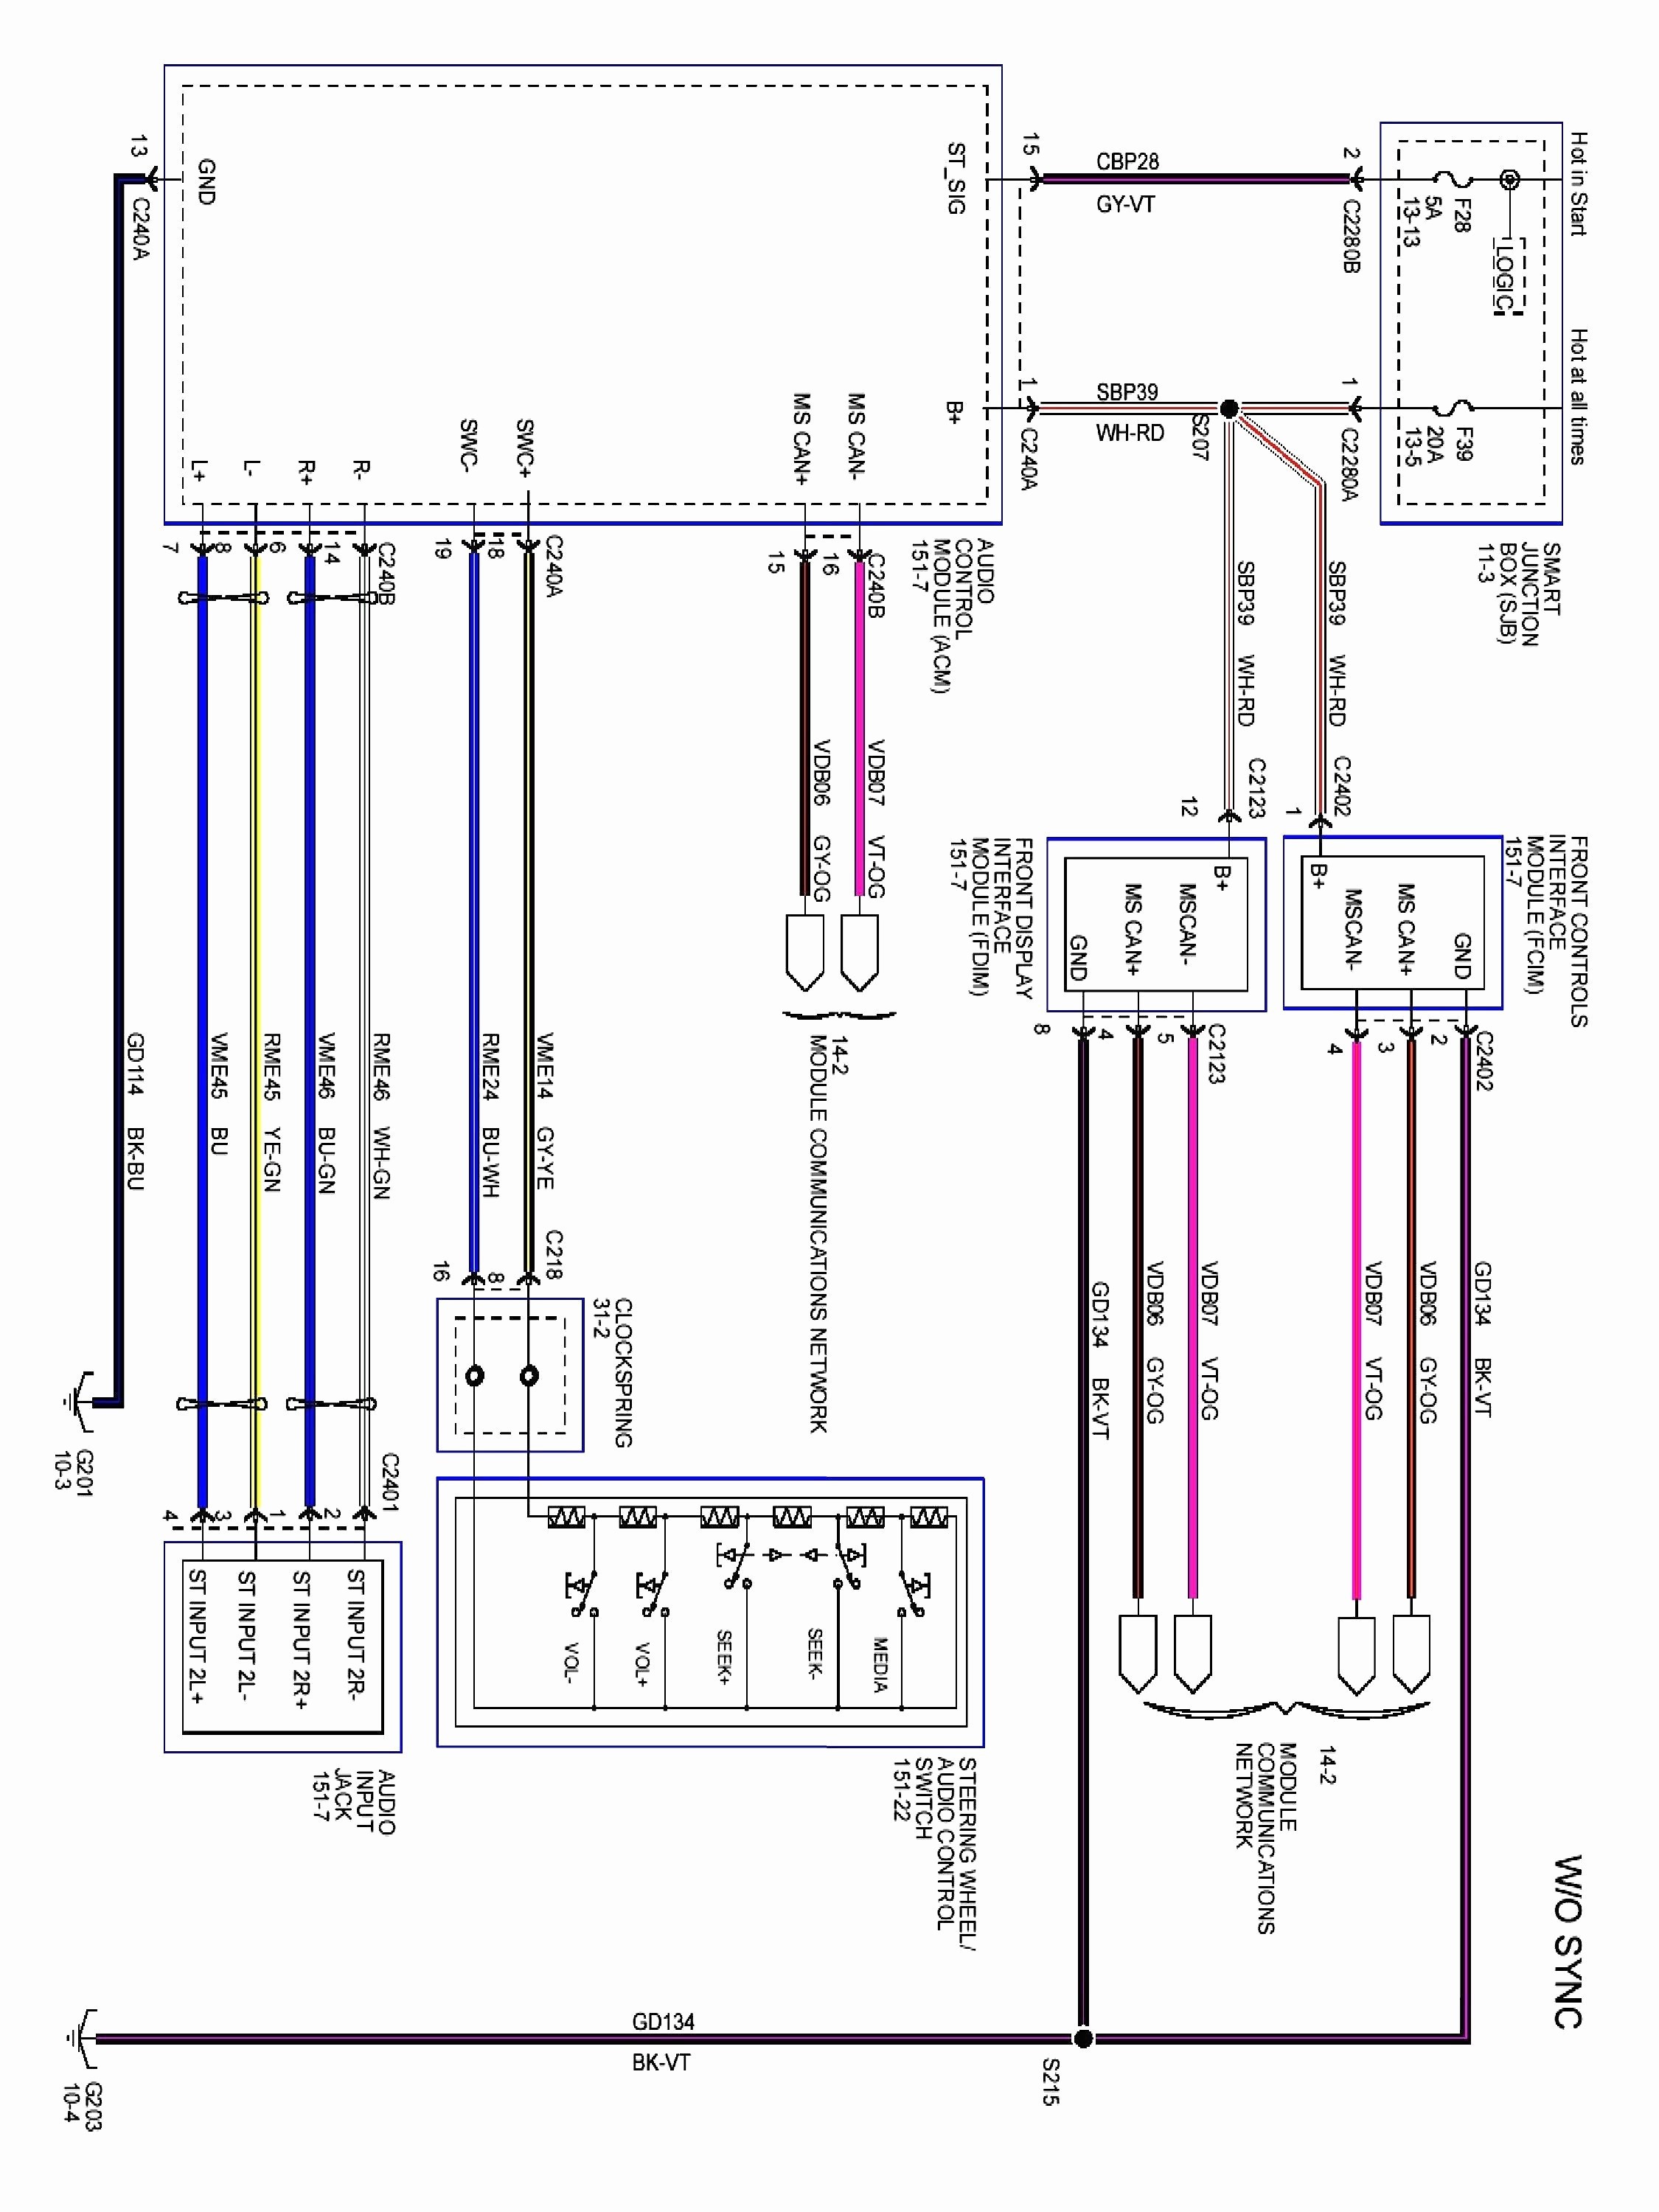 2006 Honda Civic Engine Diagram 2007 Honda Civic Stereo Wiring Diagram Electrical Circuit Of 2006 Honda Civic Engine Diagram